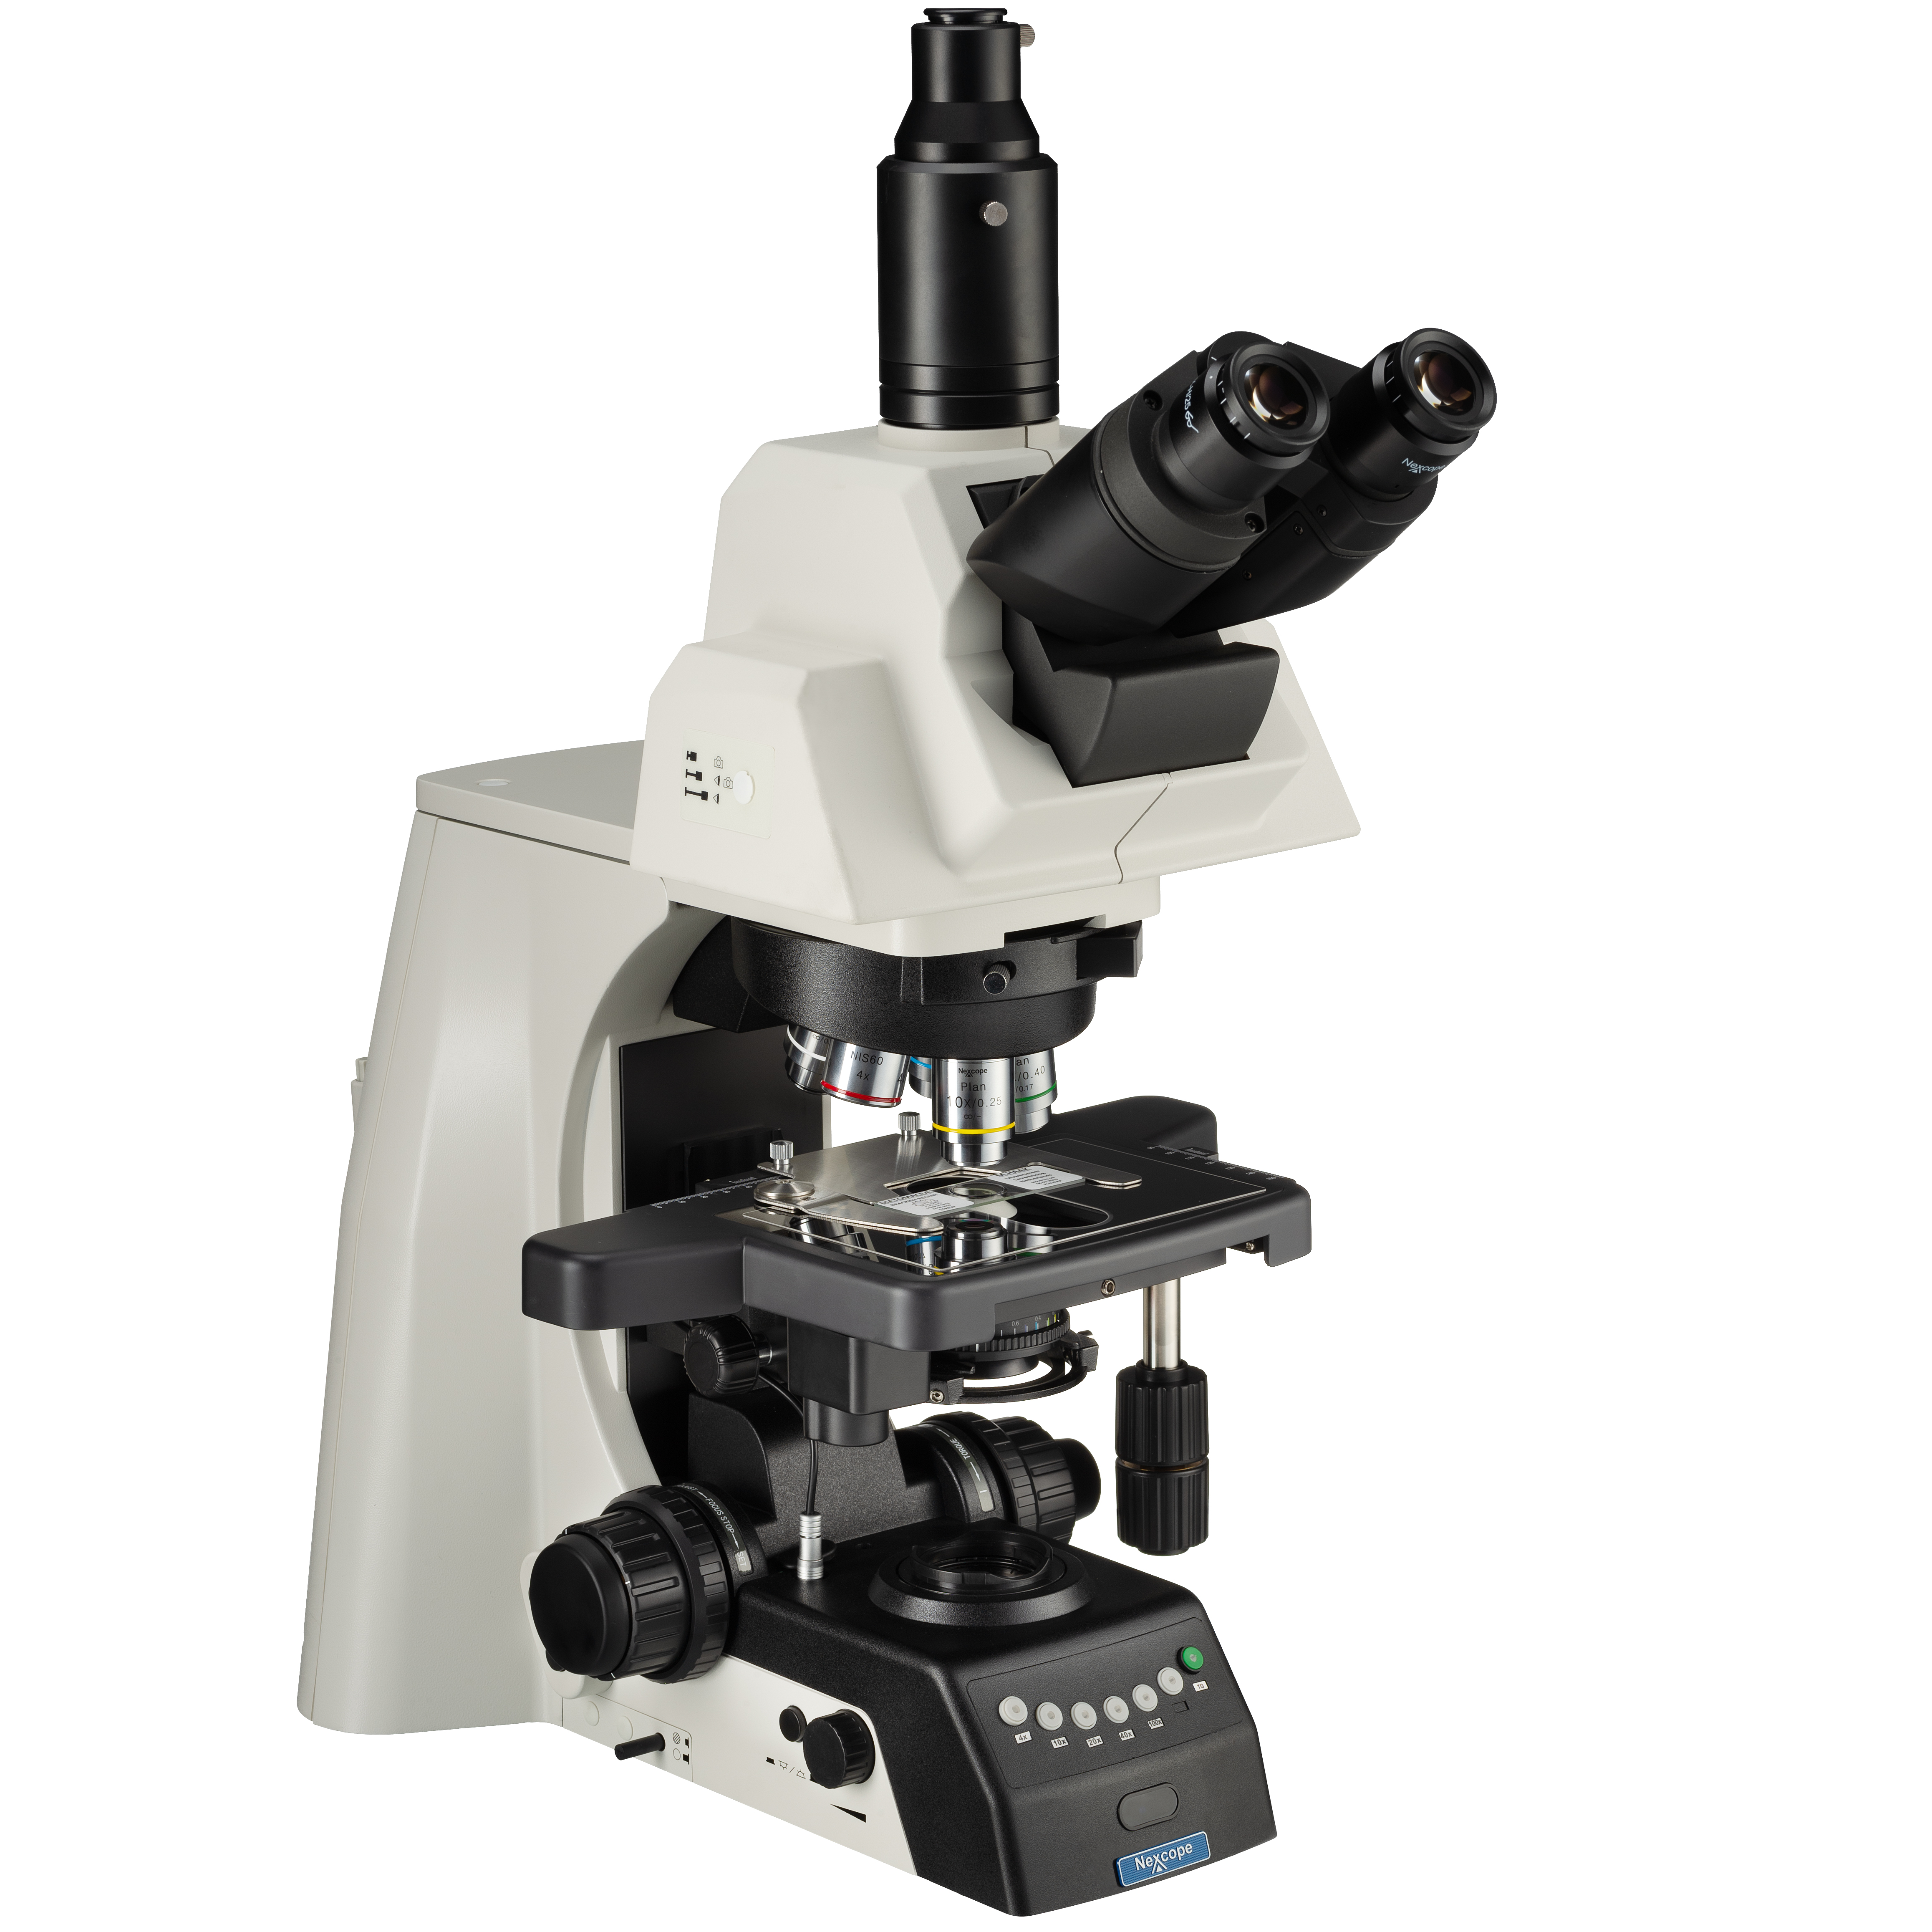 Microscopio da laboratorio professionale Nexcope NE930 con torretta portaobiettivi 6x motorizzata